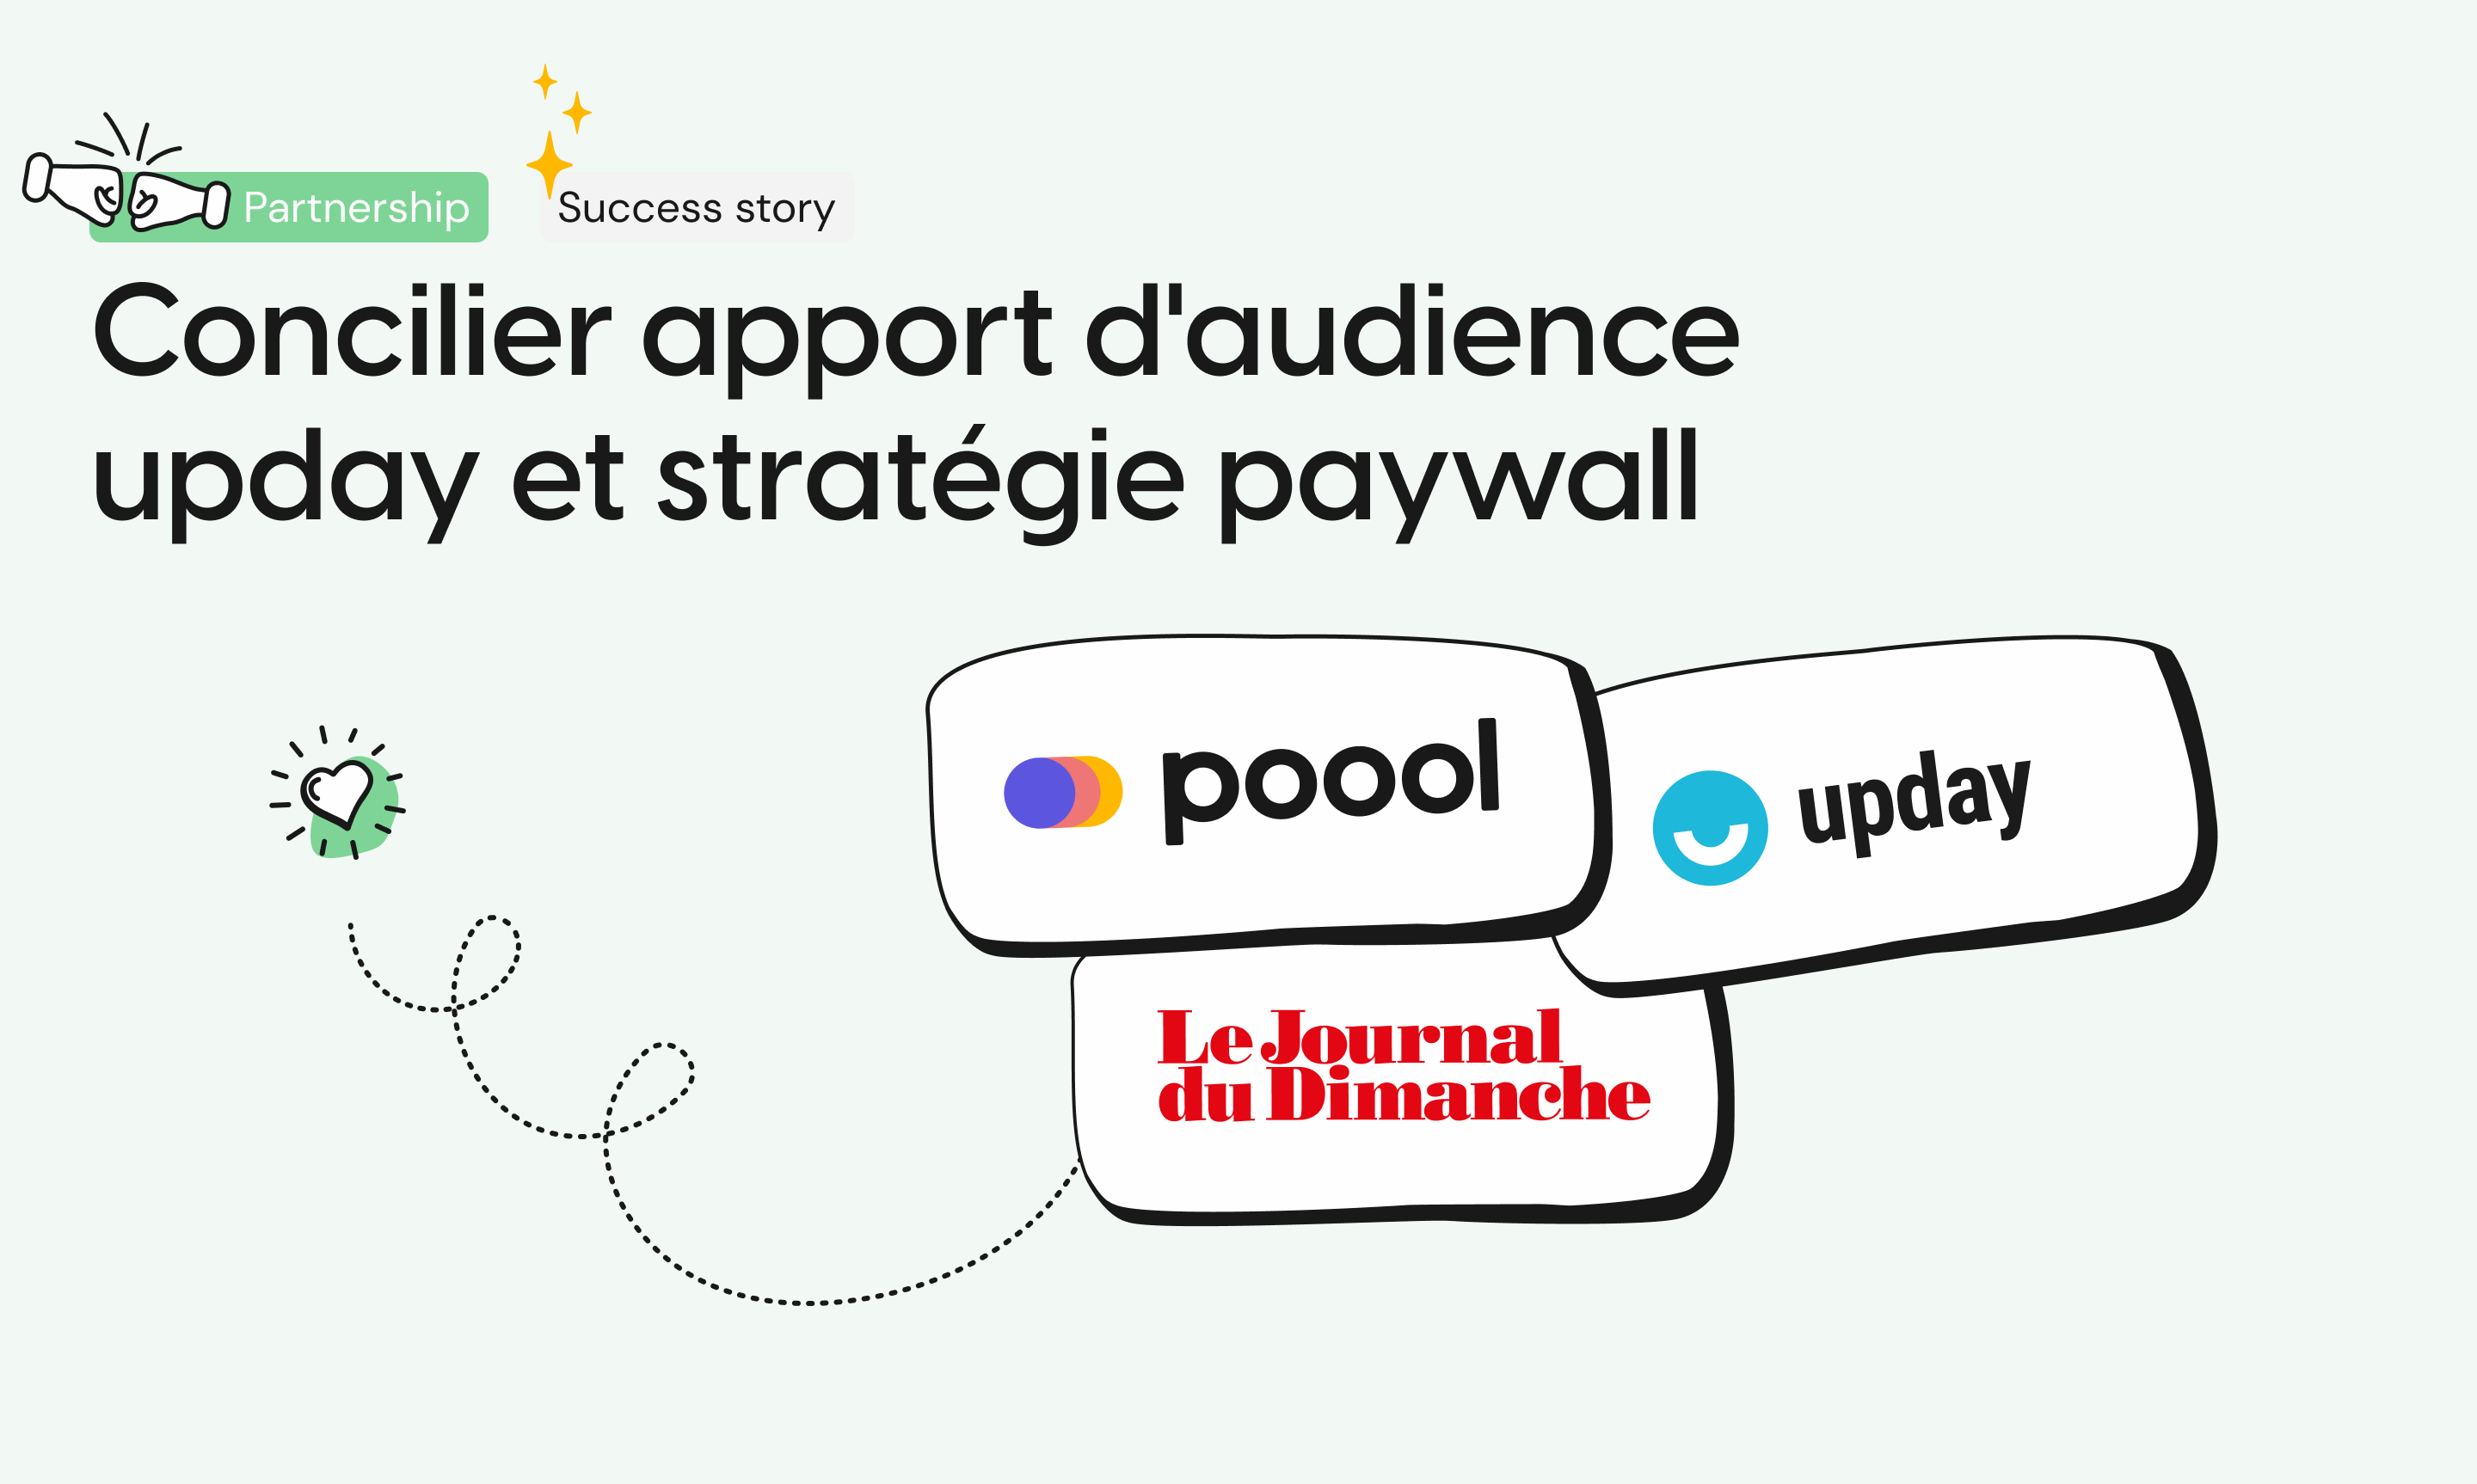 Le dispositif exclusif du JDD pour concilier apport d'audience upday et stratégie paywall